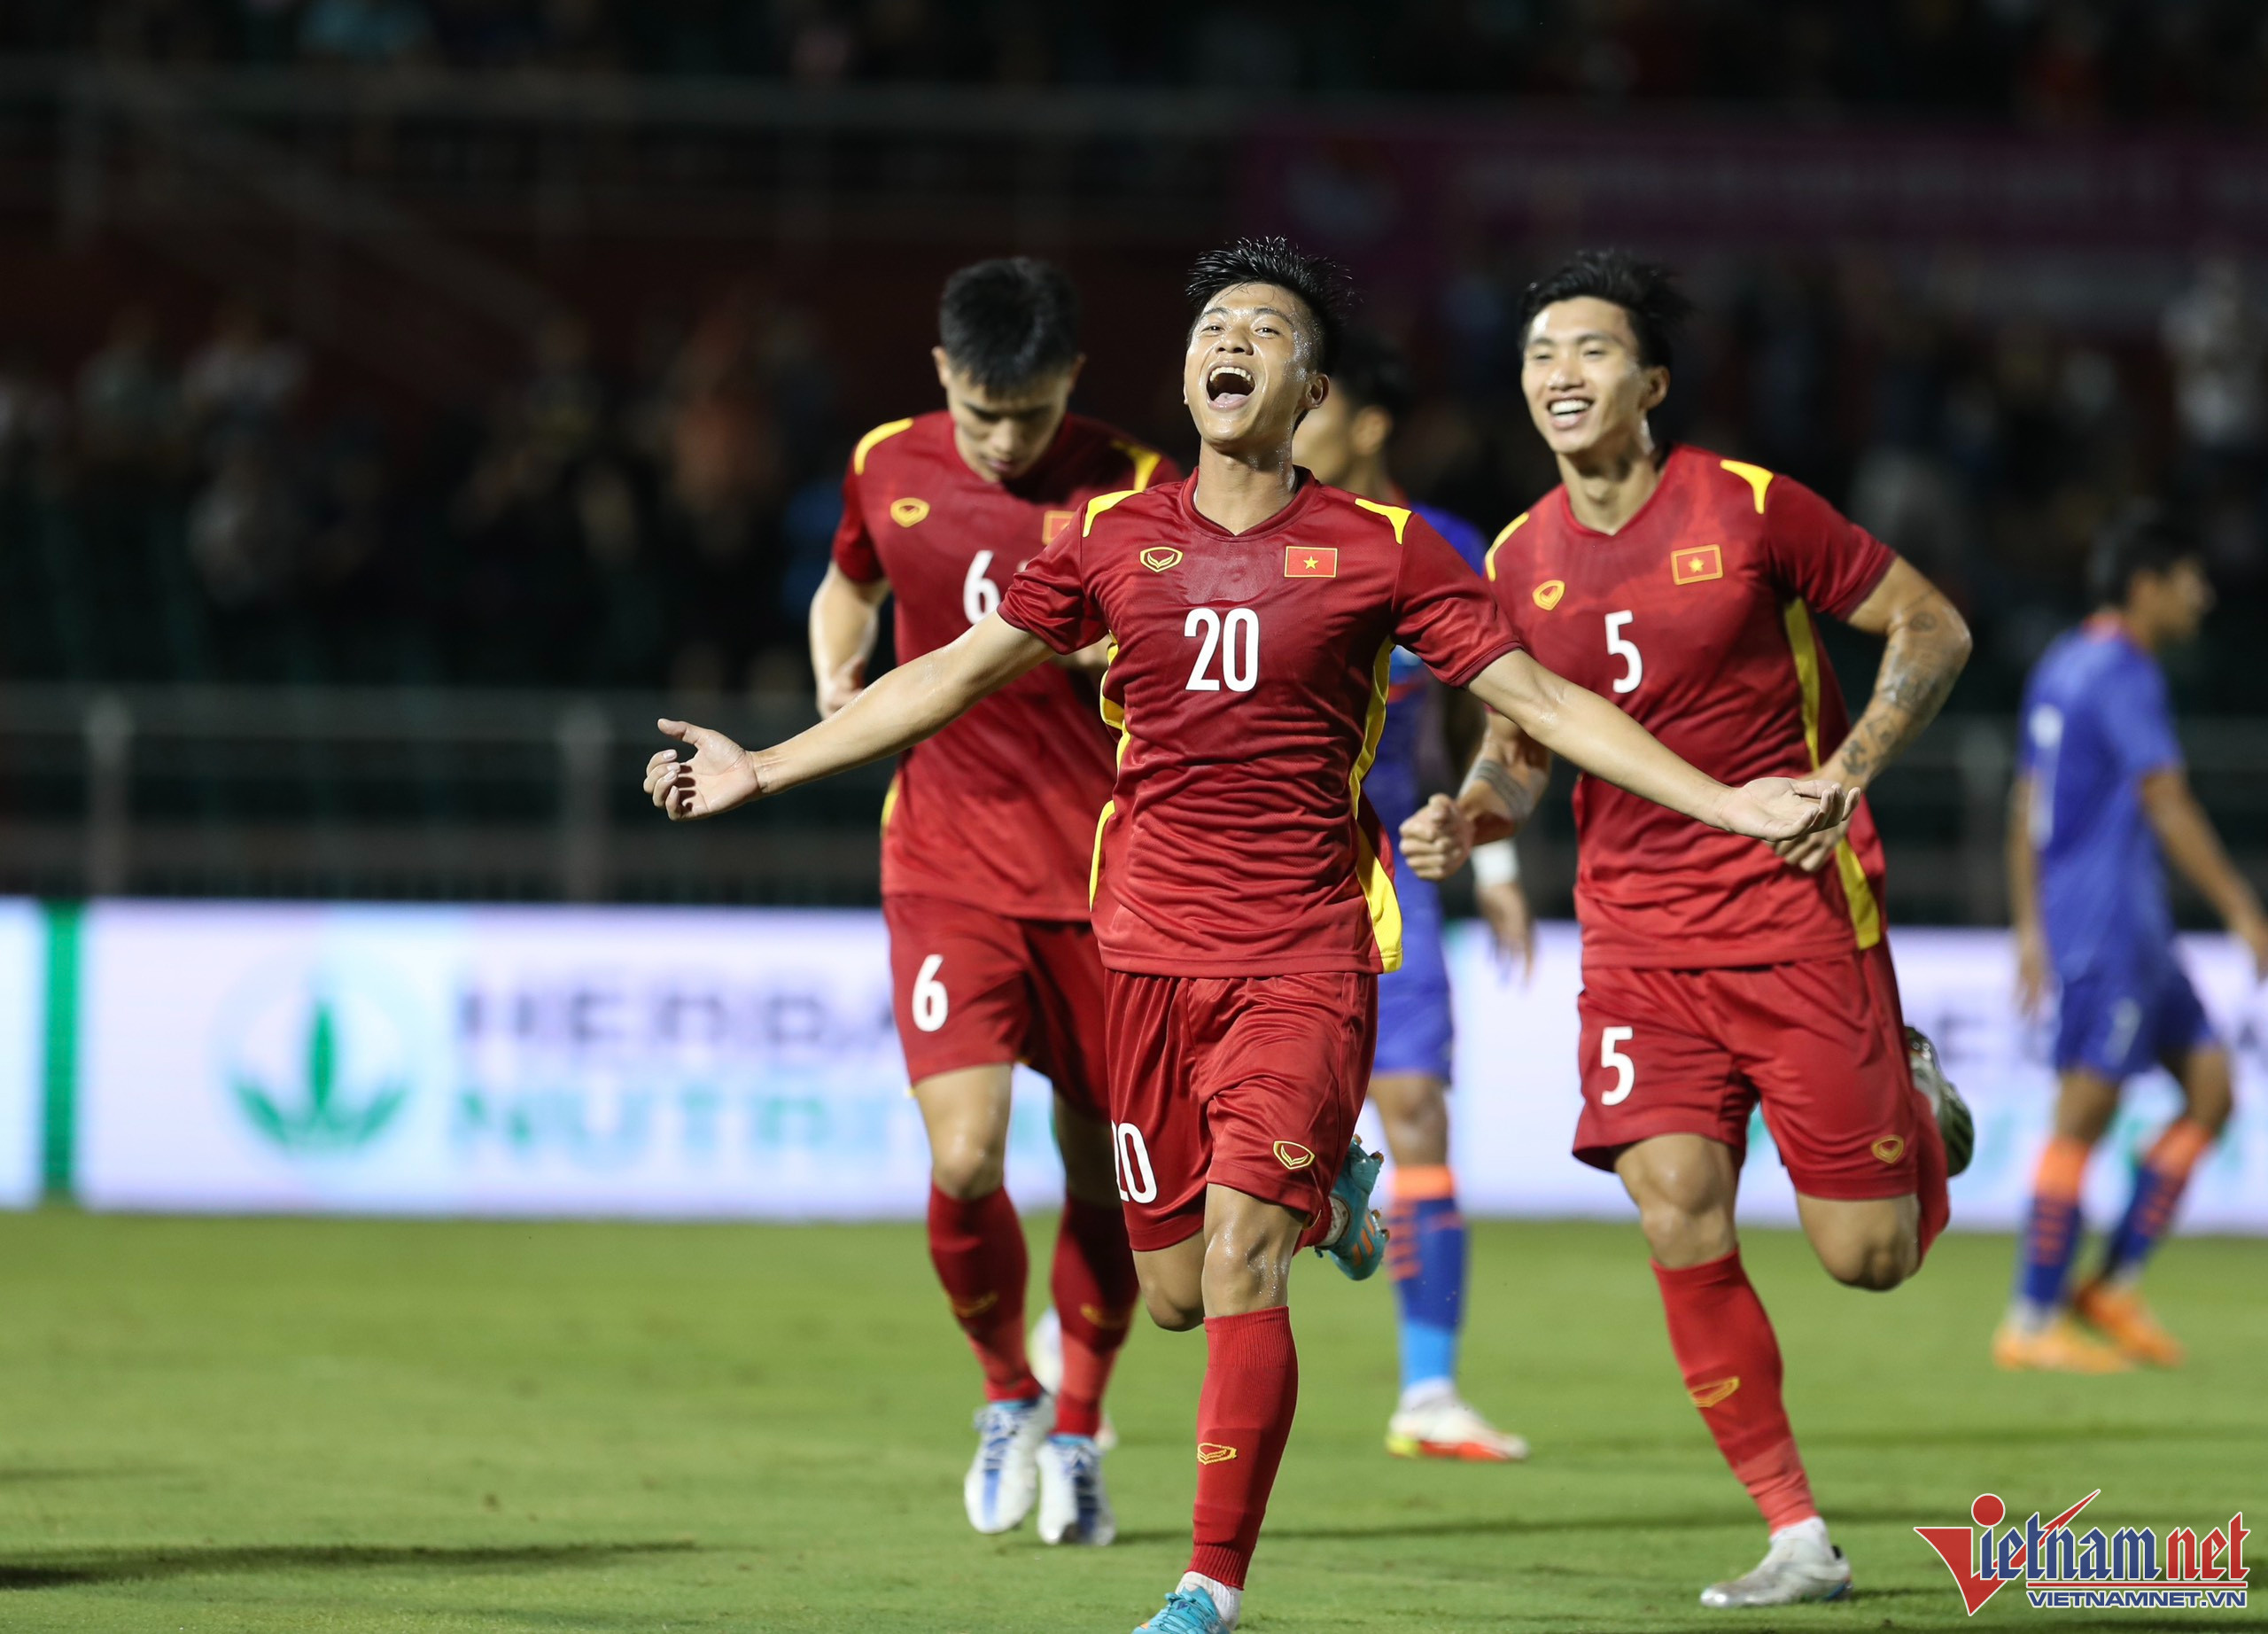 Quay trở lại với trận đấu, tuyển Việt Nam sớm có bàn thắng mở tỉ số của Văn Đức trong hiệp 1